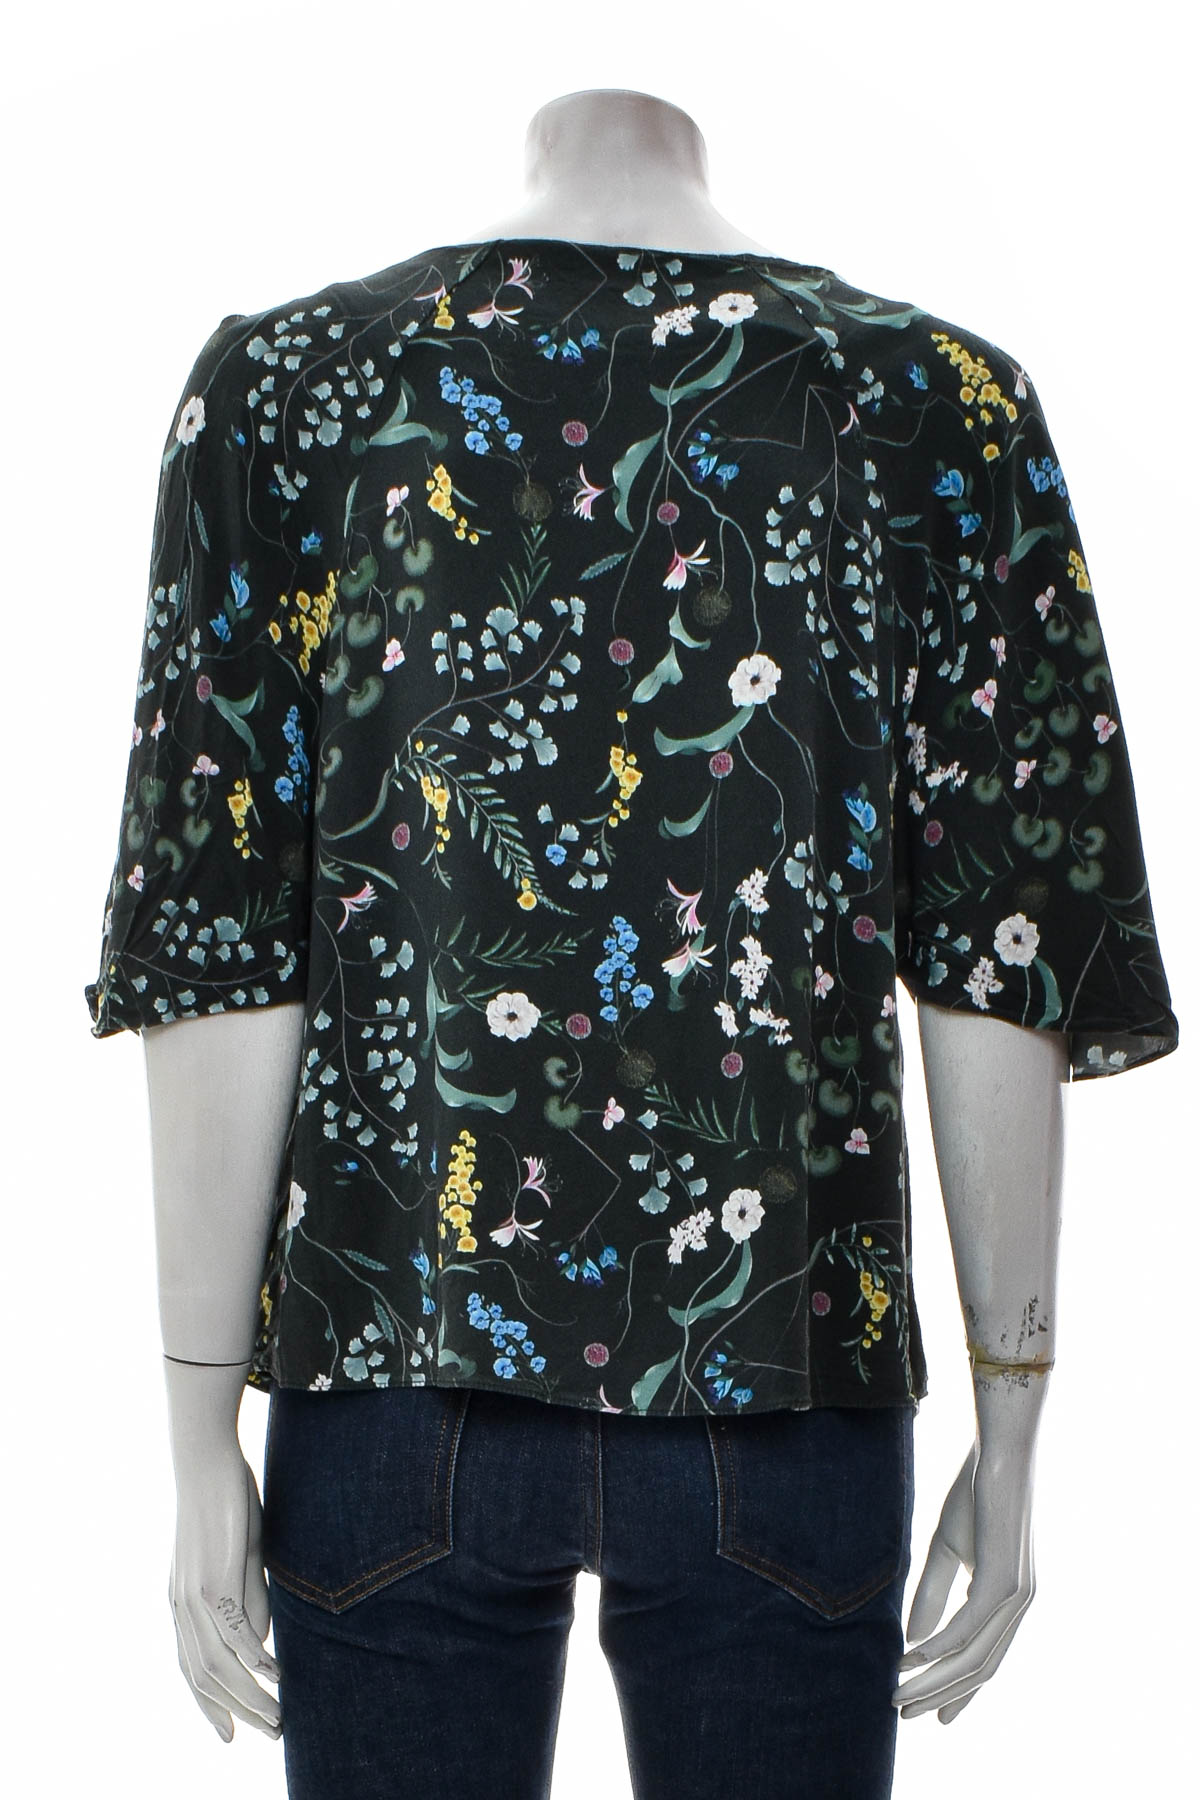 Γυναικείο πουκάμισο - Anna Glover x H&M - 1